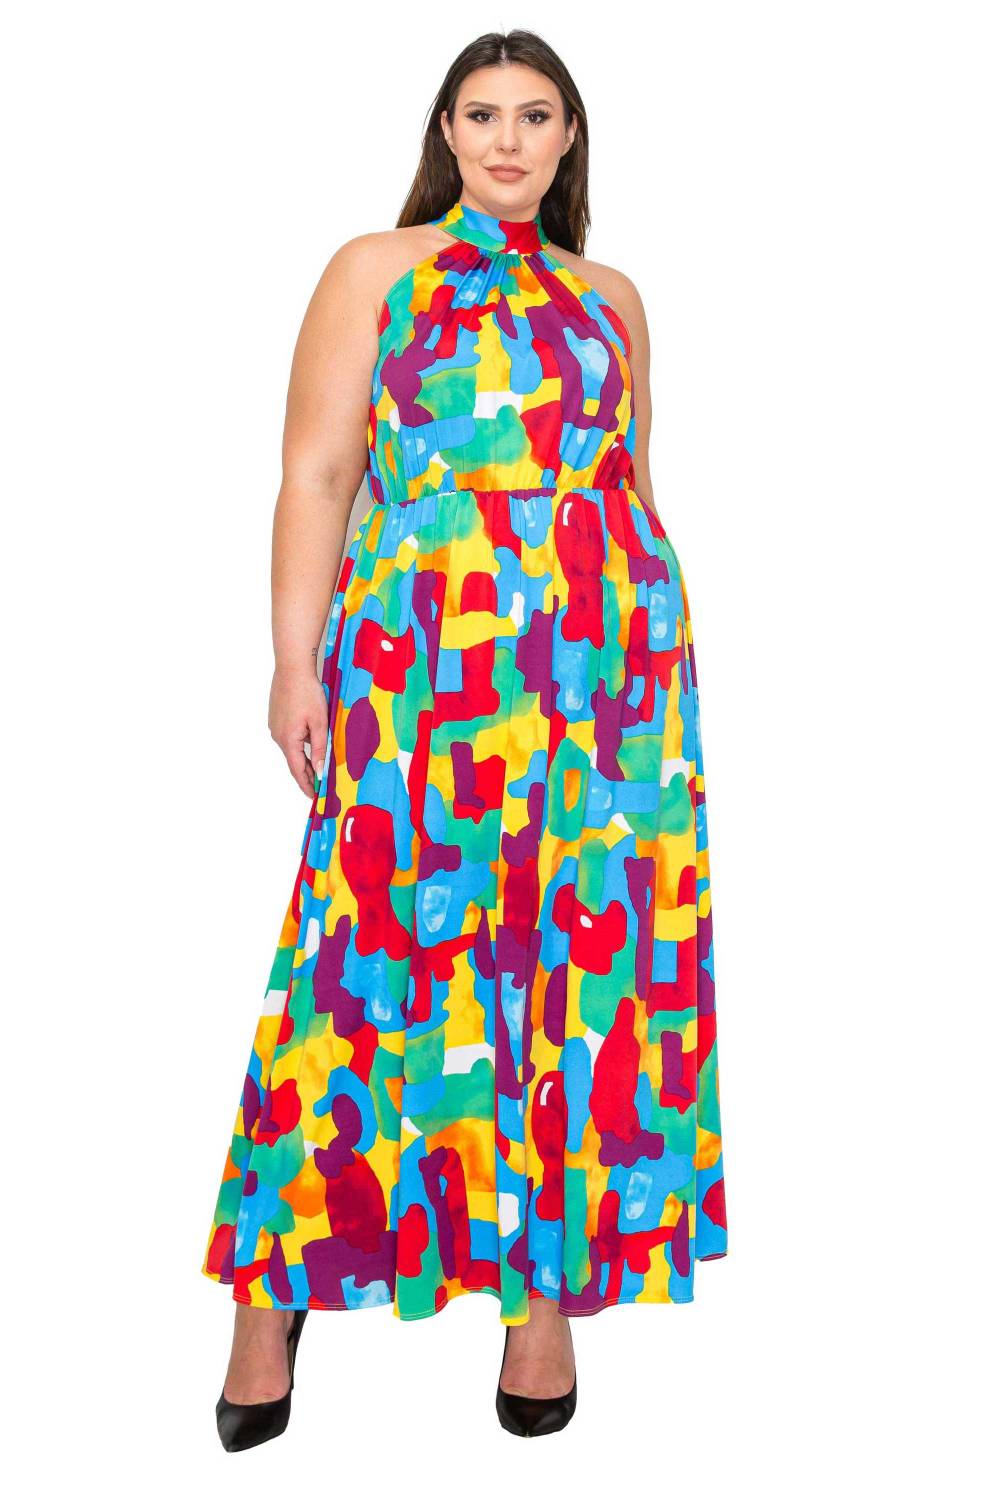 Arroyo Halter Neck Maxi Dress in Abstract Print - L I V D